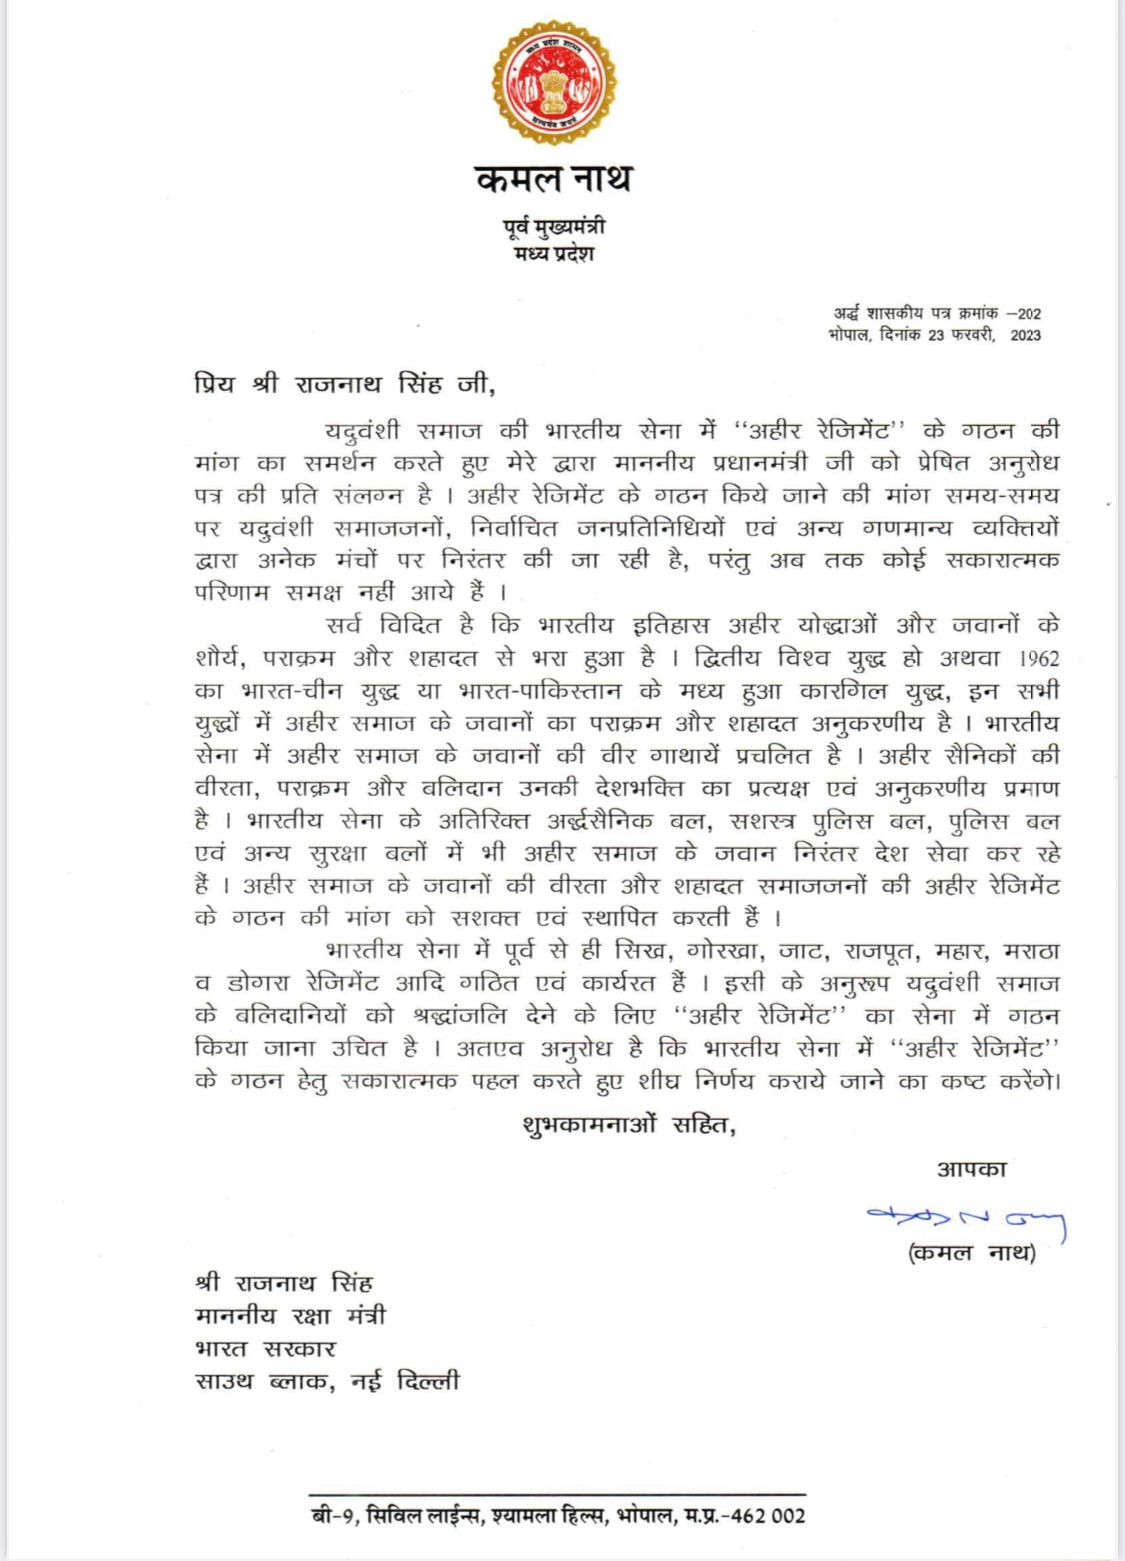 कमलनाथ ने रक्षा मंत्री राजनाथ सिंह को लिखा पत्र, सेना में अहीर रेजिमेंट बनाने की मांग का समर्थन